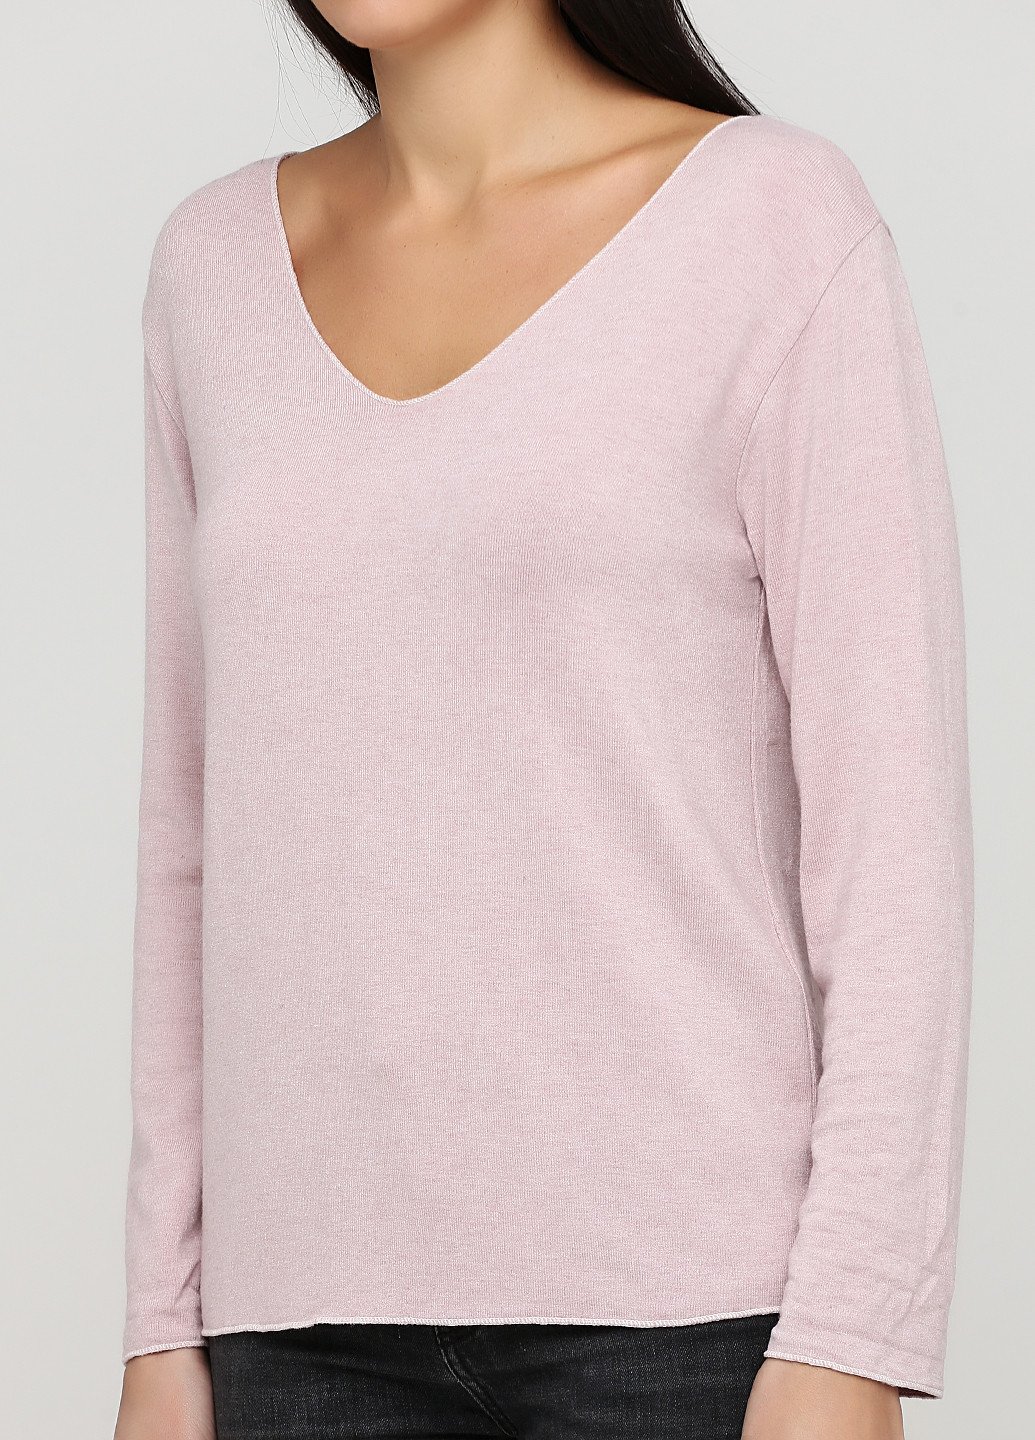 Светло-розовый демисезонный пуловер пуловер Made in Italy